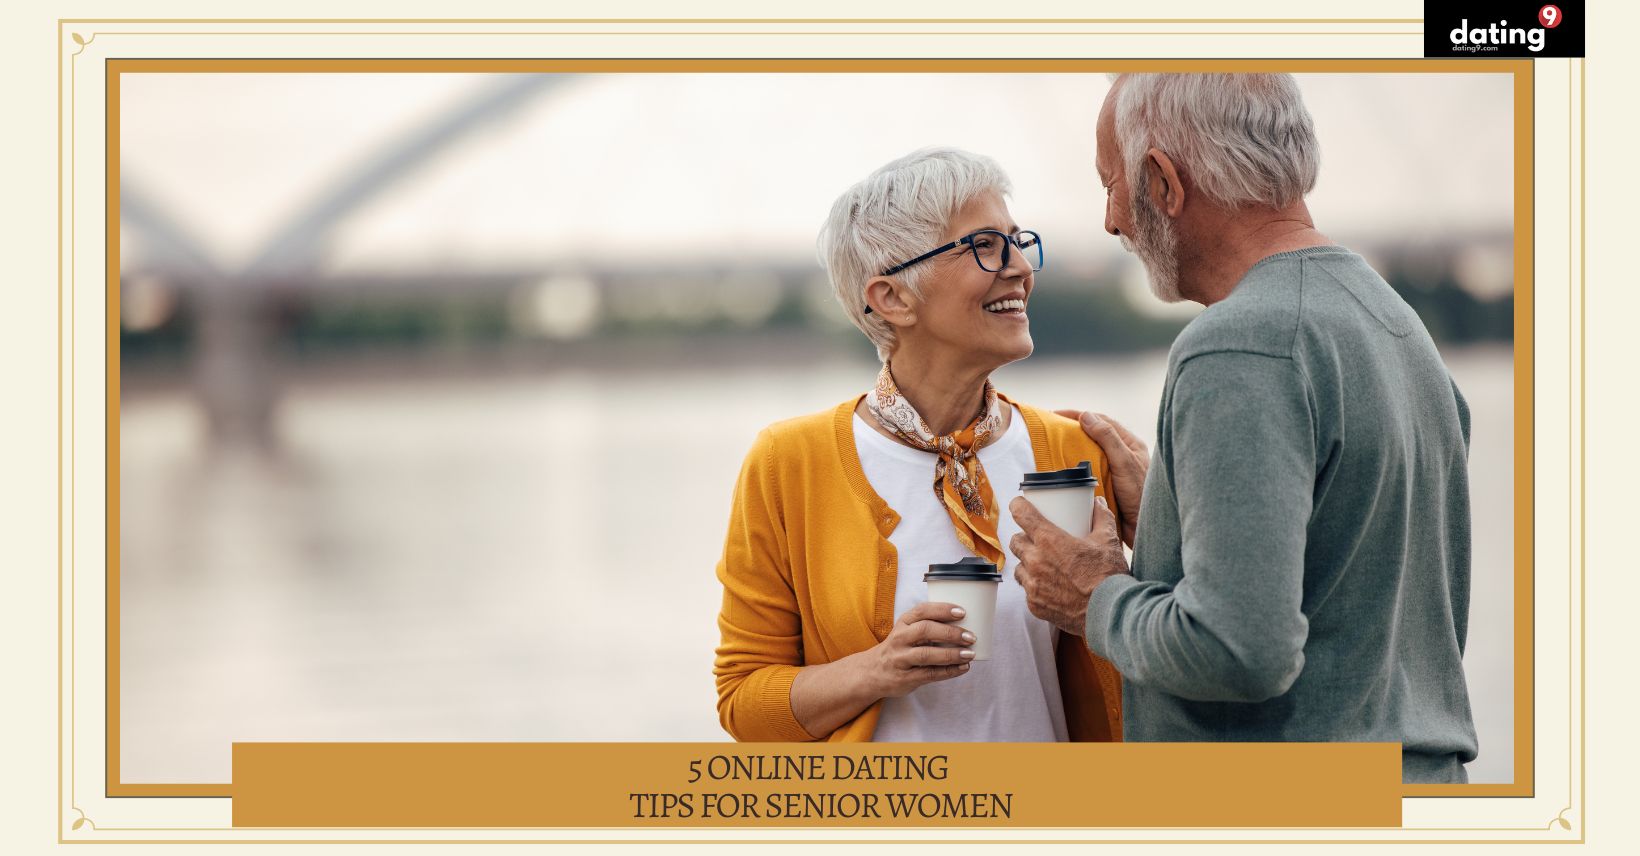 5 Online Dating Tips for Senior Women